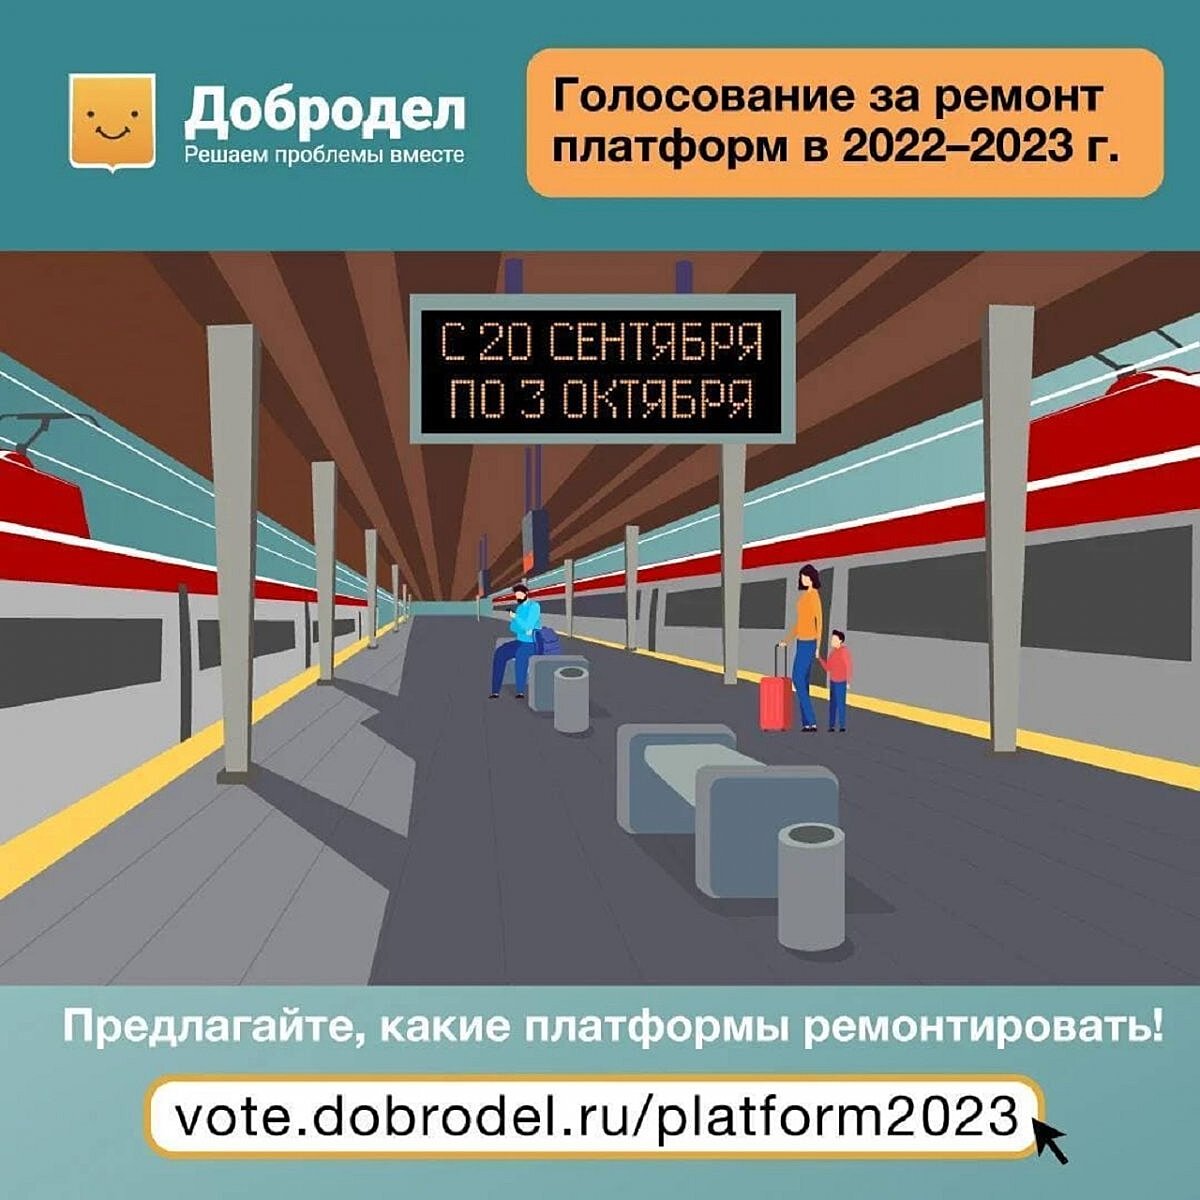 Началось голосование за ремонт 13 железнодорожных станций в Подмосковье